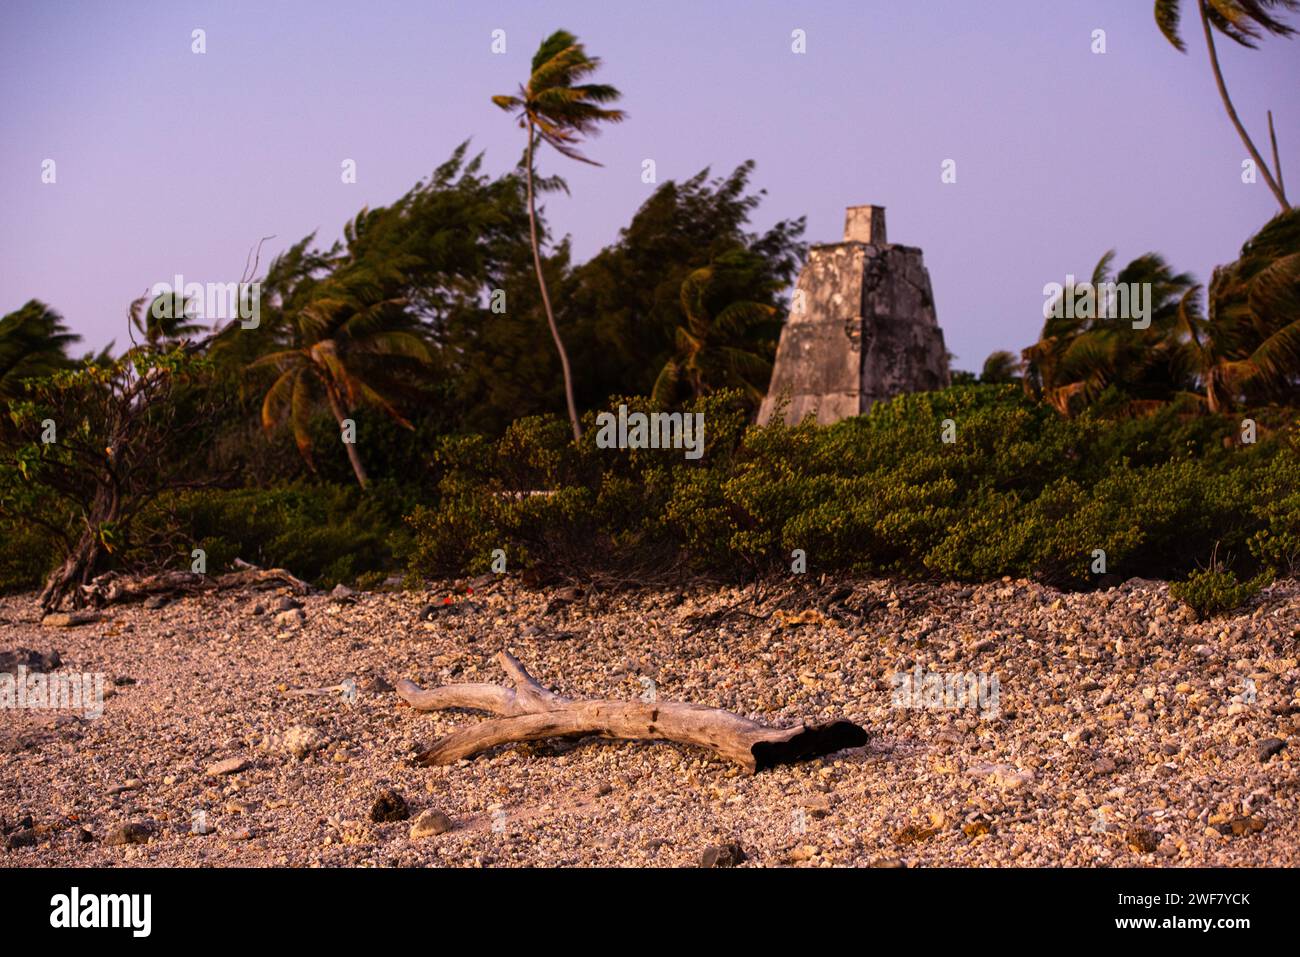 Amanecer en uno de los faros más antiguos de Polinesia, de casi 100 años de antigüedad. Phare de Topaka, Fakarava, Islas Tuamotu Foto de stock